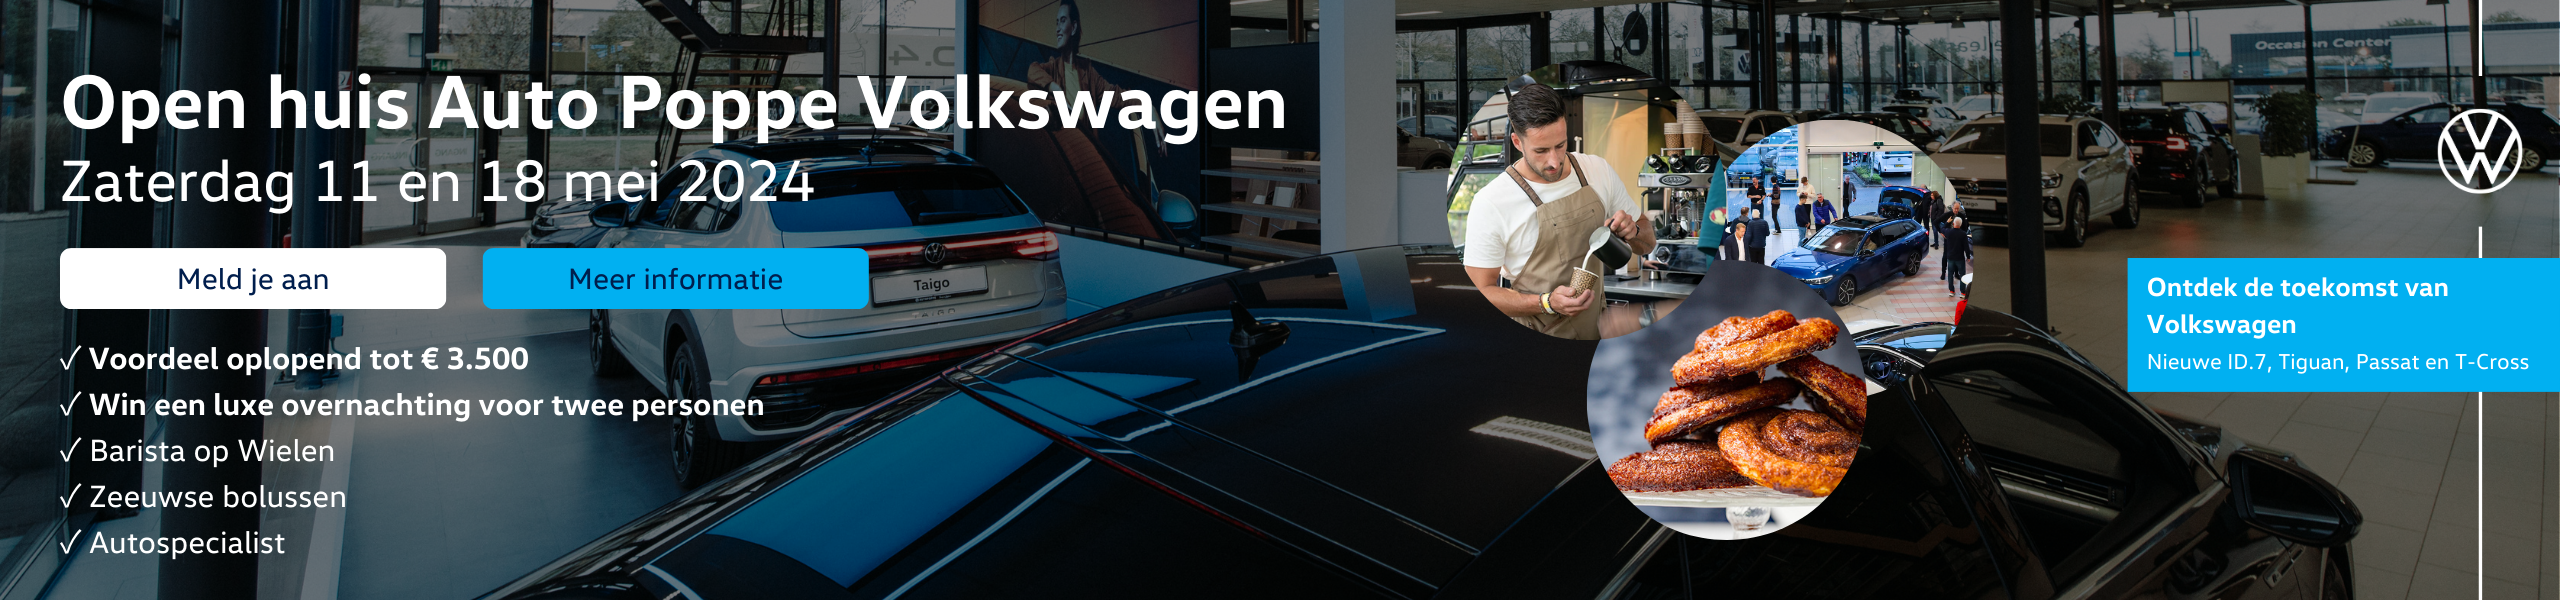 Open huis Auto Poppe Volkswagen